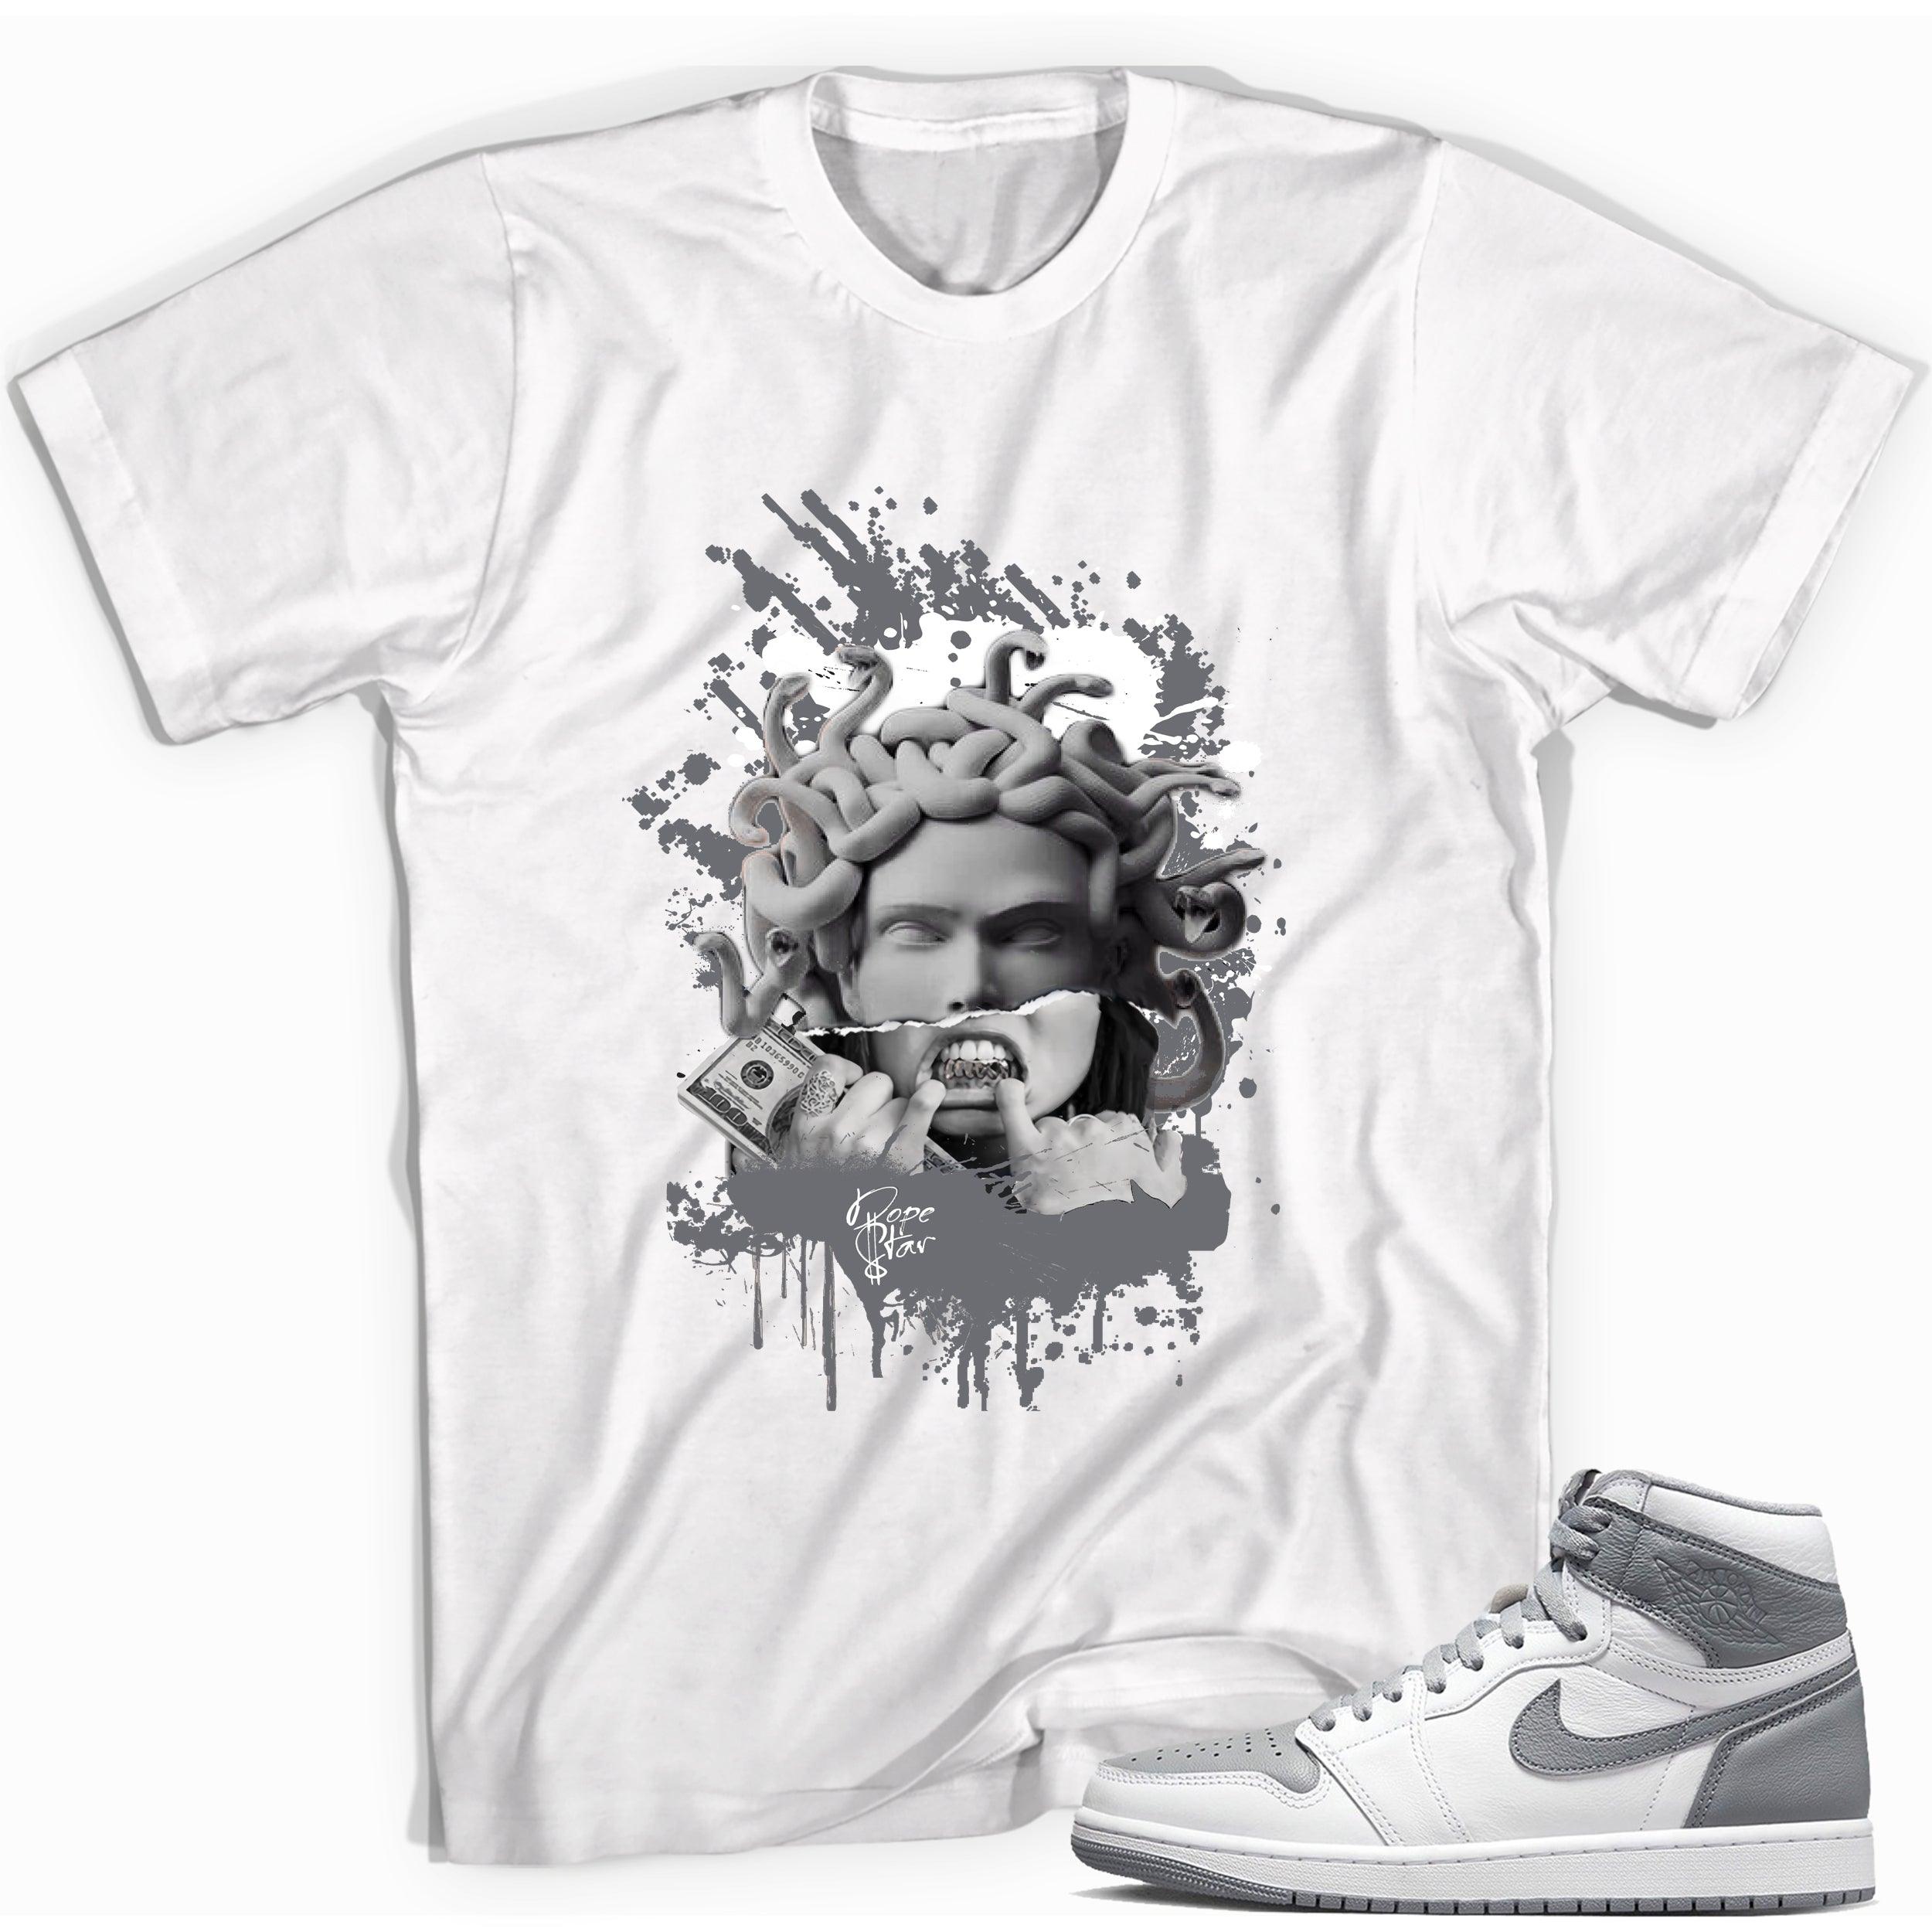 Medusa Shirt for Jordan 1s photo